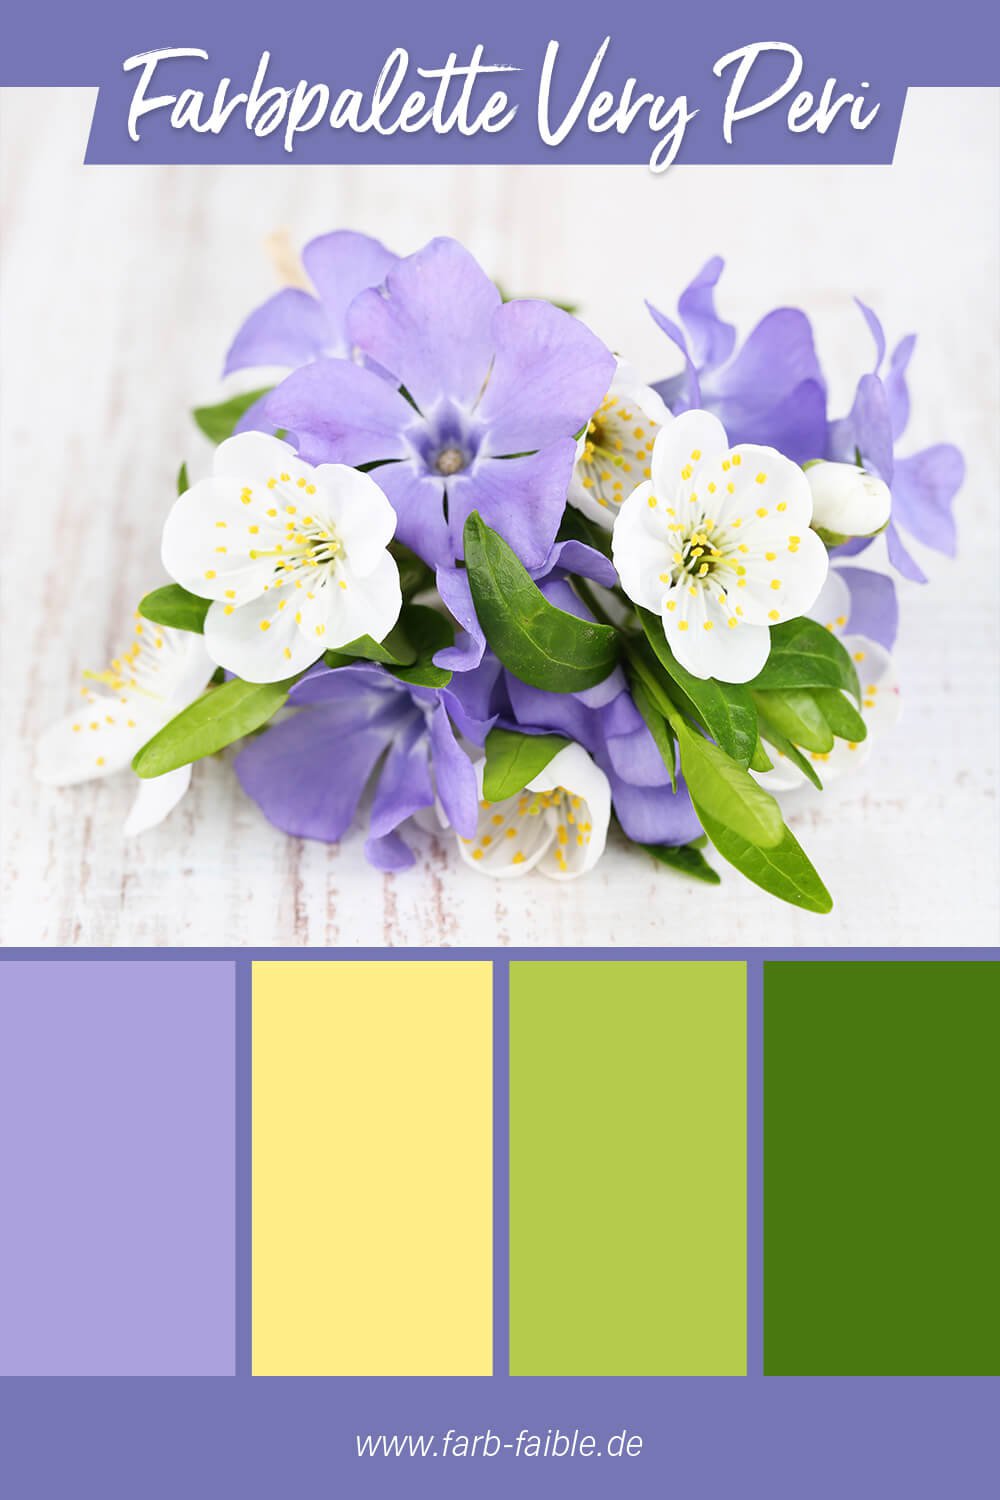 Pantone Farbe des Jahres 2022 Very Peri - Beispiel der Farbpalette mit Veilchenlila, Hellgelb, Hellgrün und Dunkelgrün